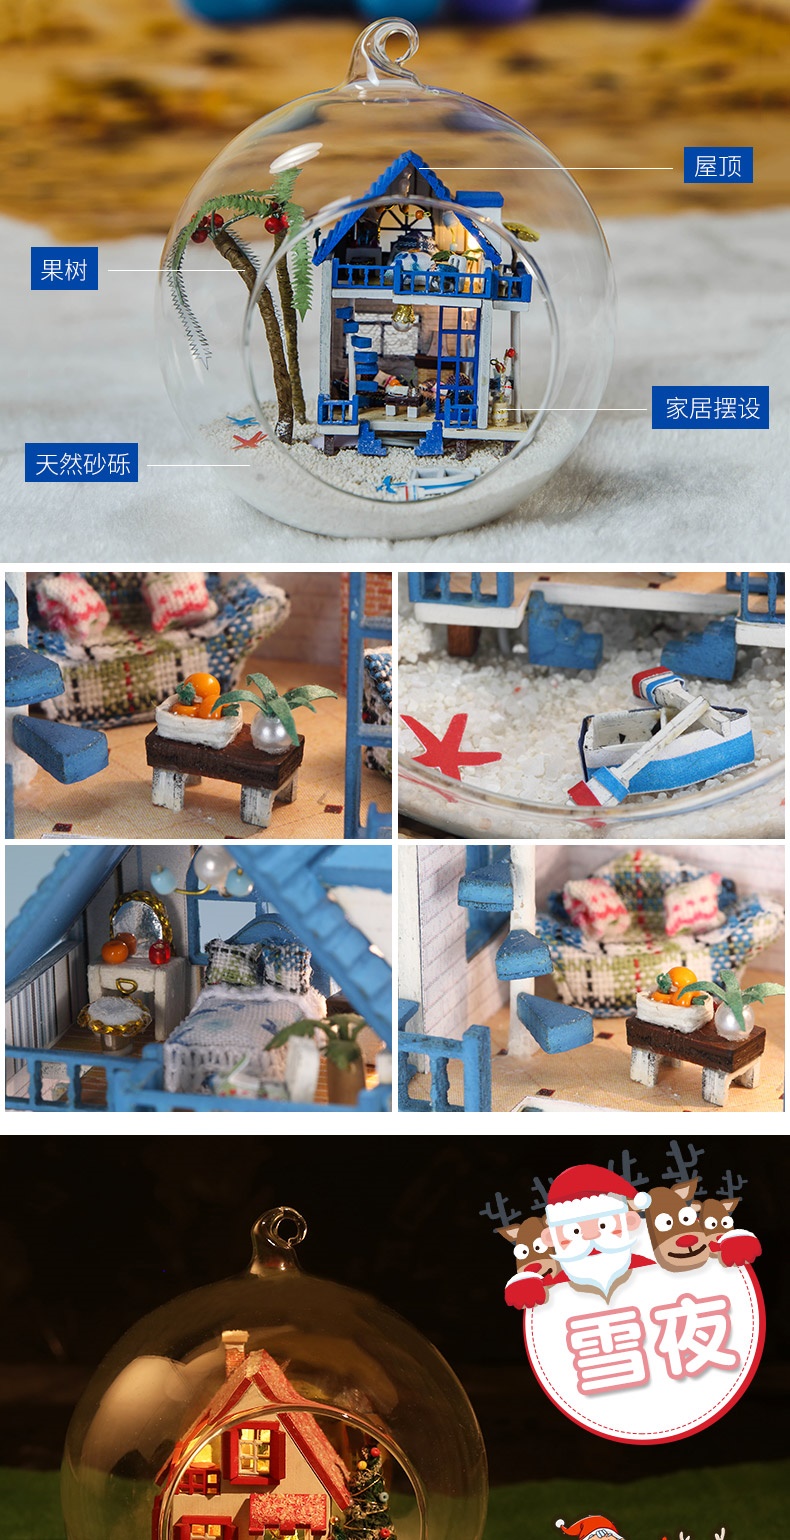 Fun Yiya tự làm túp lều làm bằng tay quả bóng thủy tinh mô hình ngôi nhà nhỏ lắp ráp đồ chơi món quà sinh nhật sáng tạo - Chế độ tĩnh